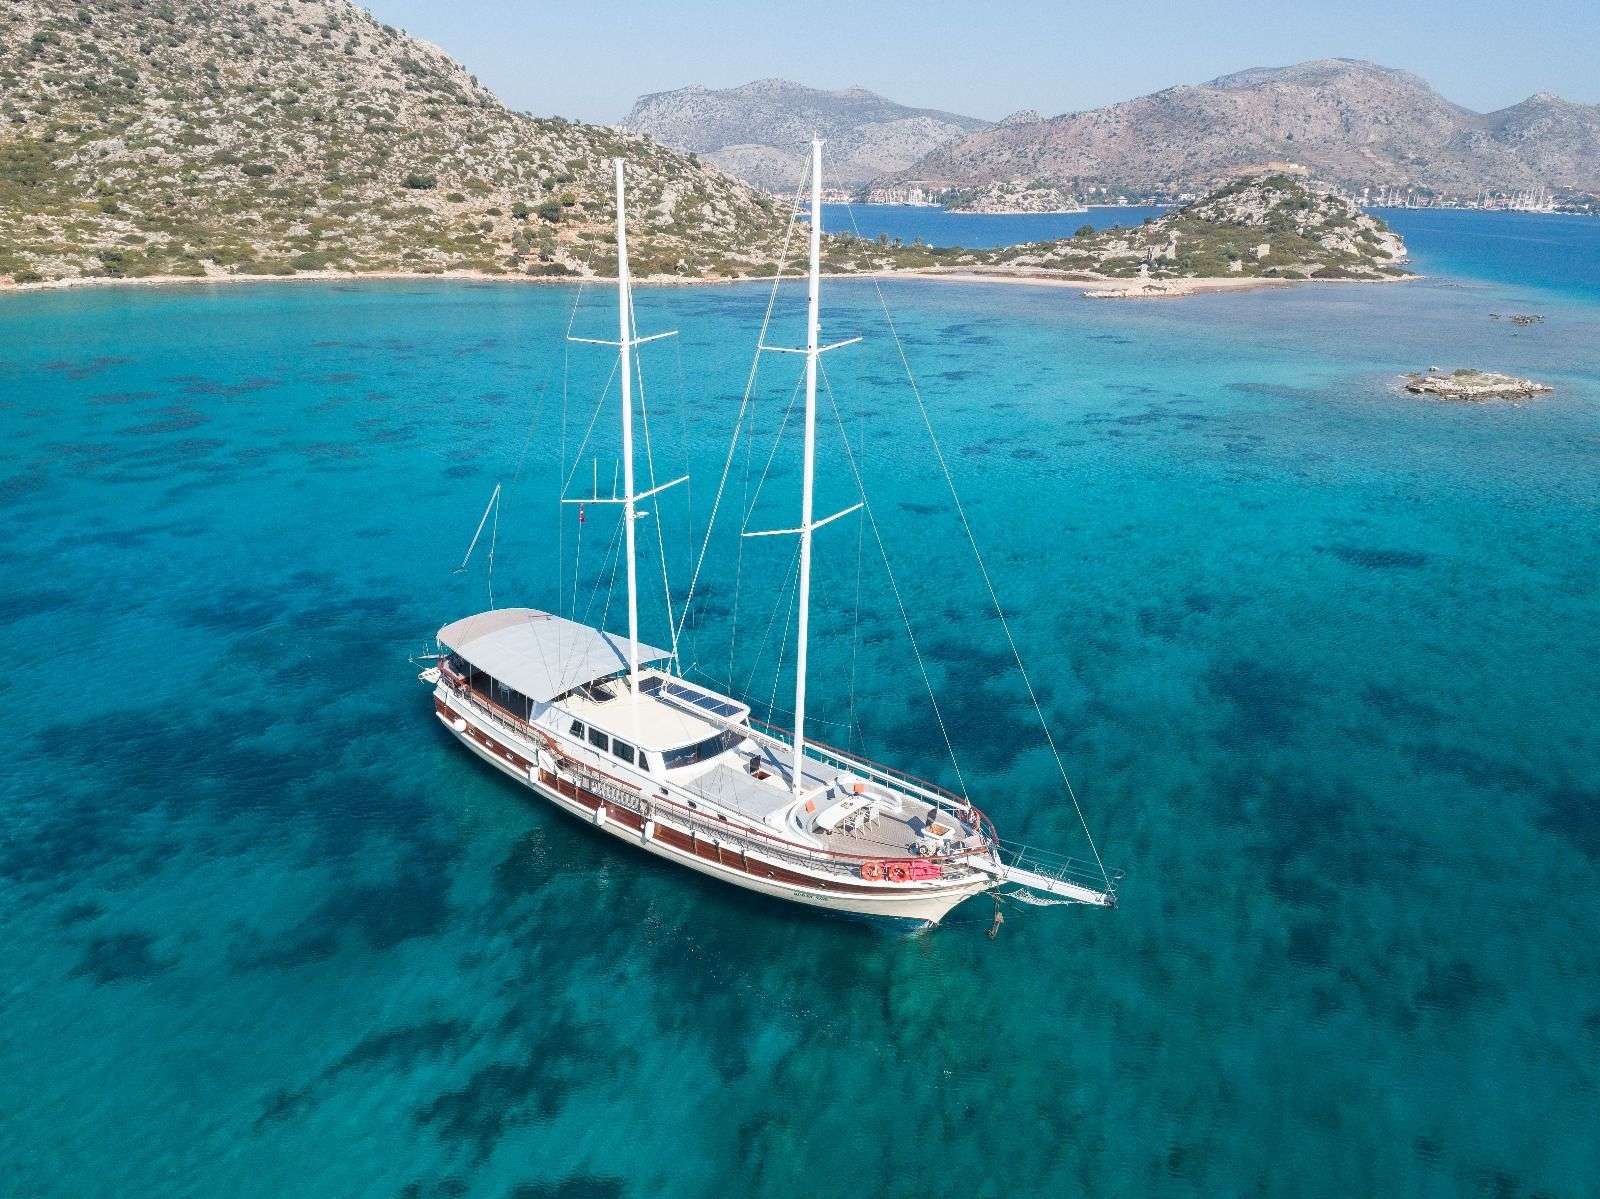 koray ege - Yacht Charter Zakynthos & Boat hire in Greece & Turkey 2